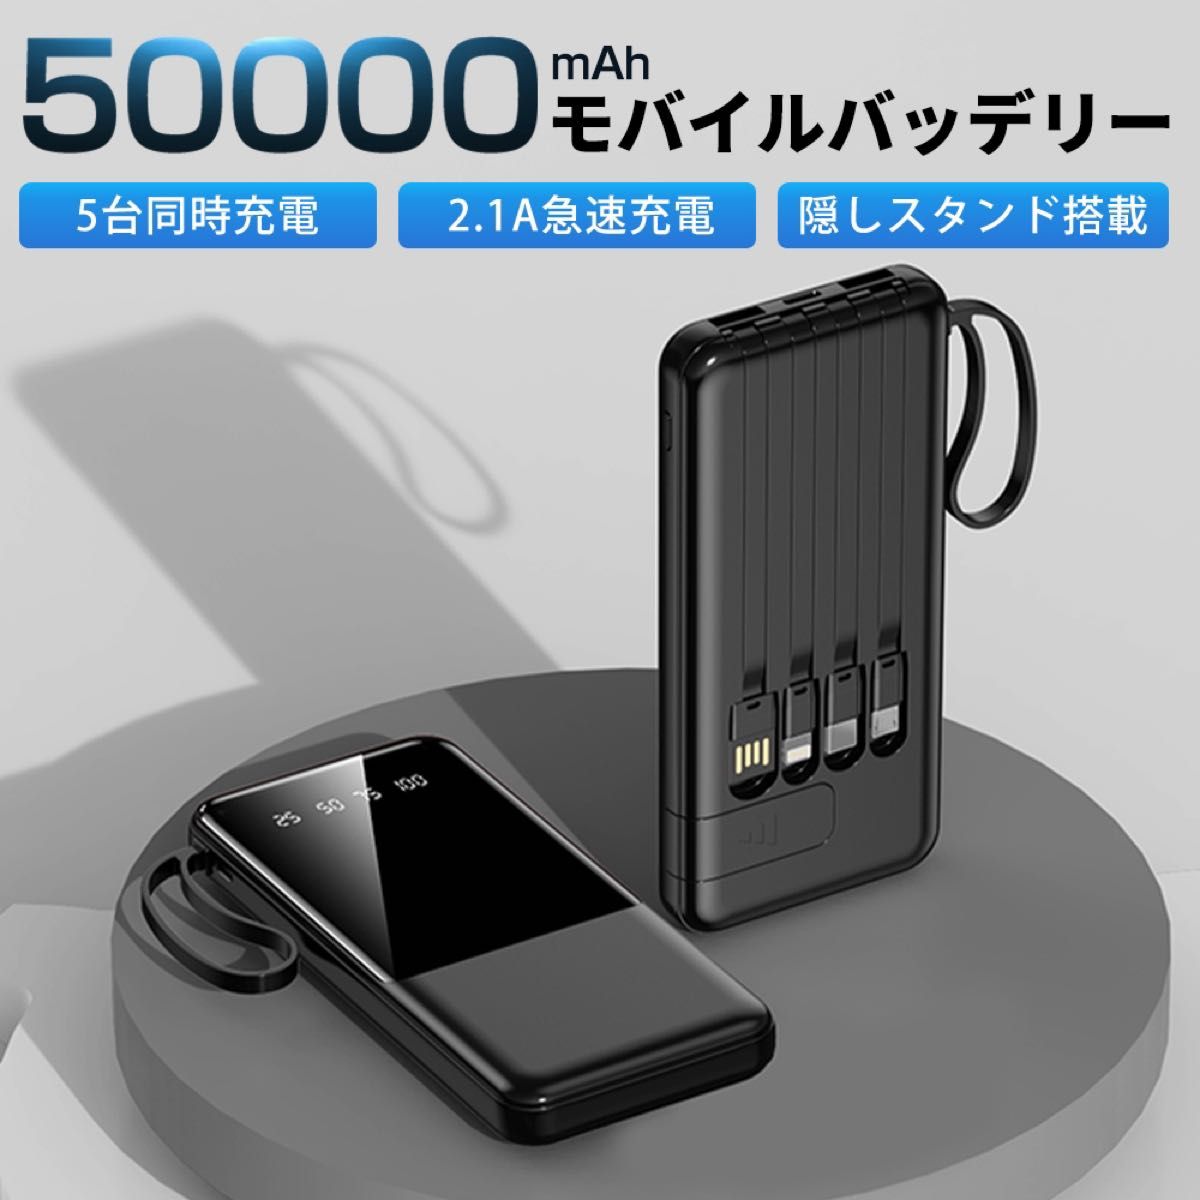 【2台セット】モバイルバッテリー 50000mAh 大容量 軽量 急速充電 5台同時充電可能 残量表示  防災地震 PSE認証済 